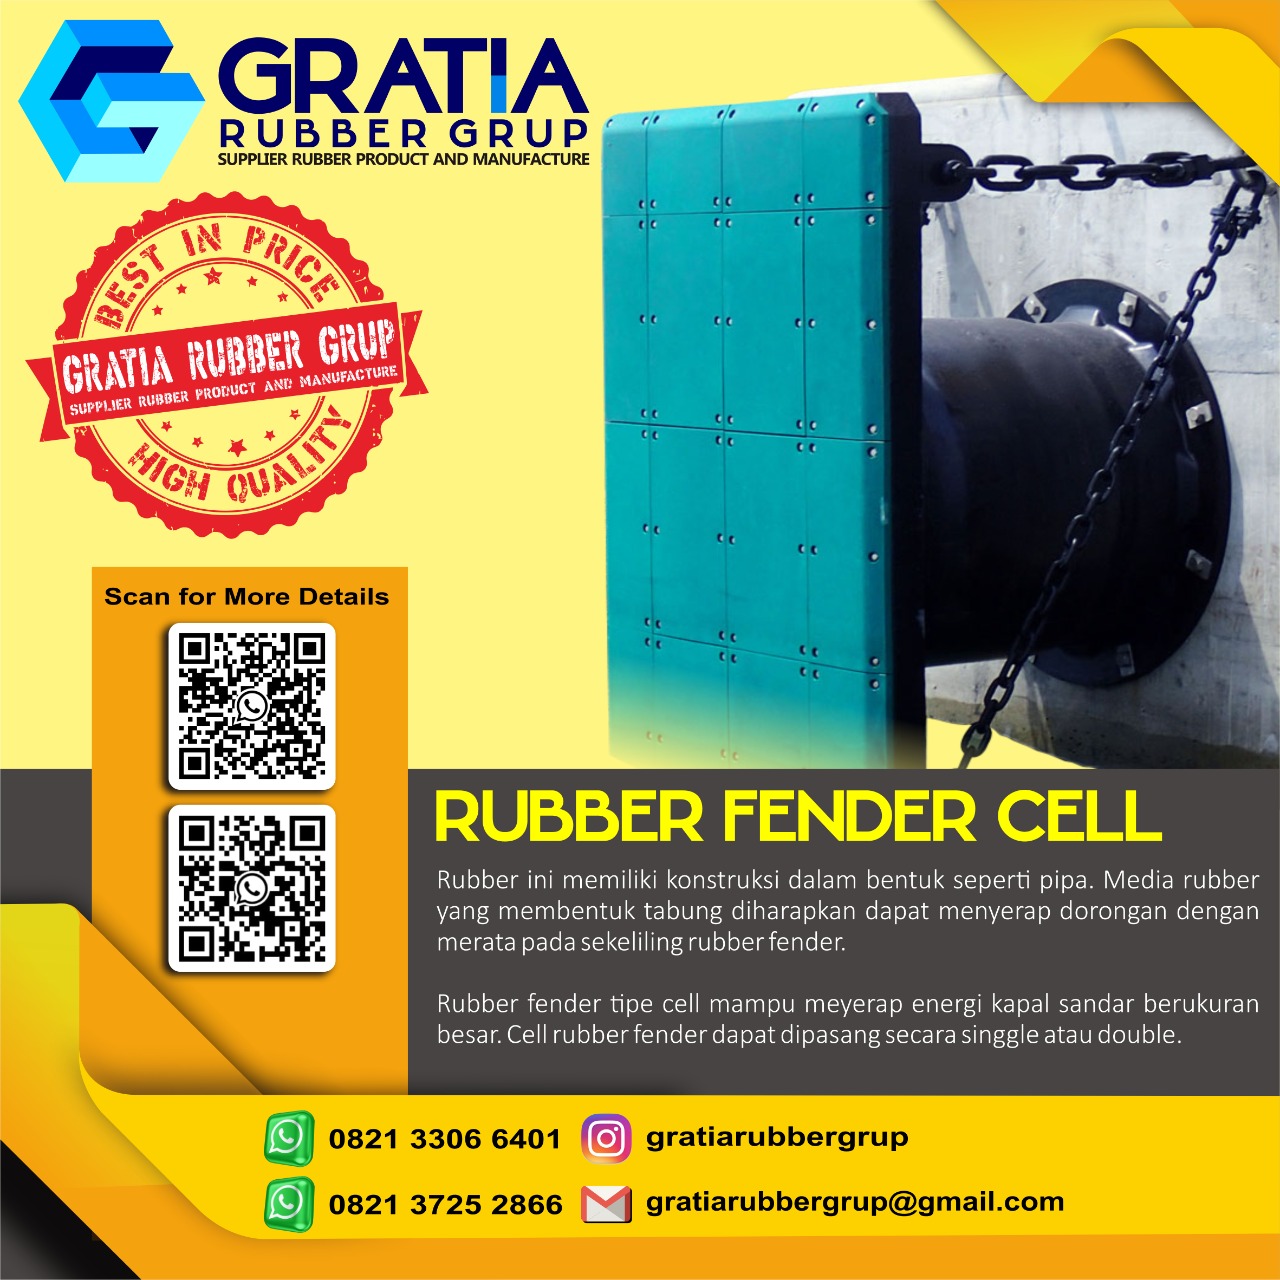 Harga Rubber Fender Murah Dan Berkualitas  Melayani Pengiriman Ke Kendari Barat Kota Kendari Sulawesi Tenggara Hub 0821 3306 0461